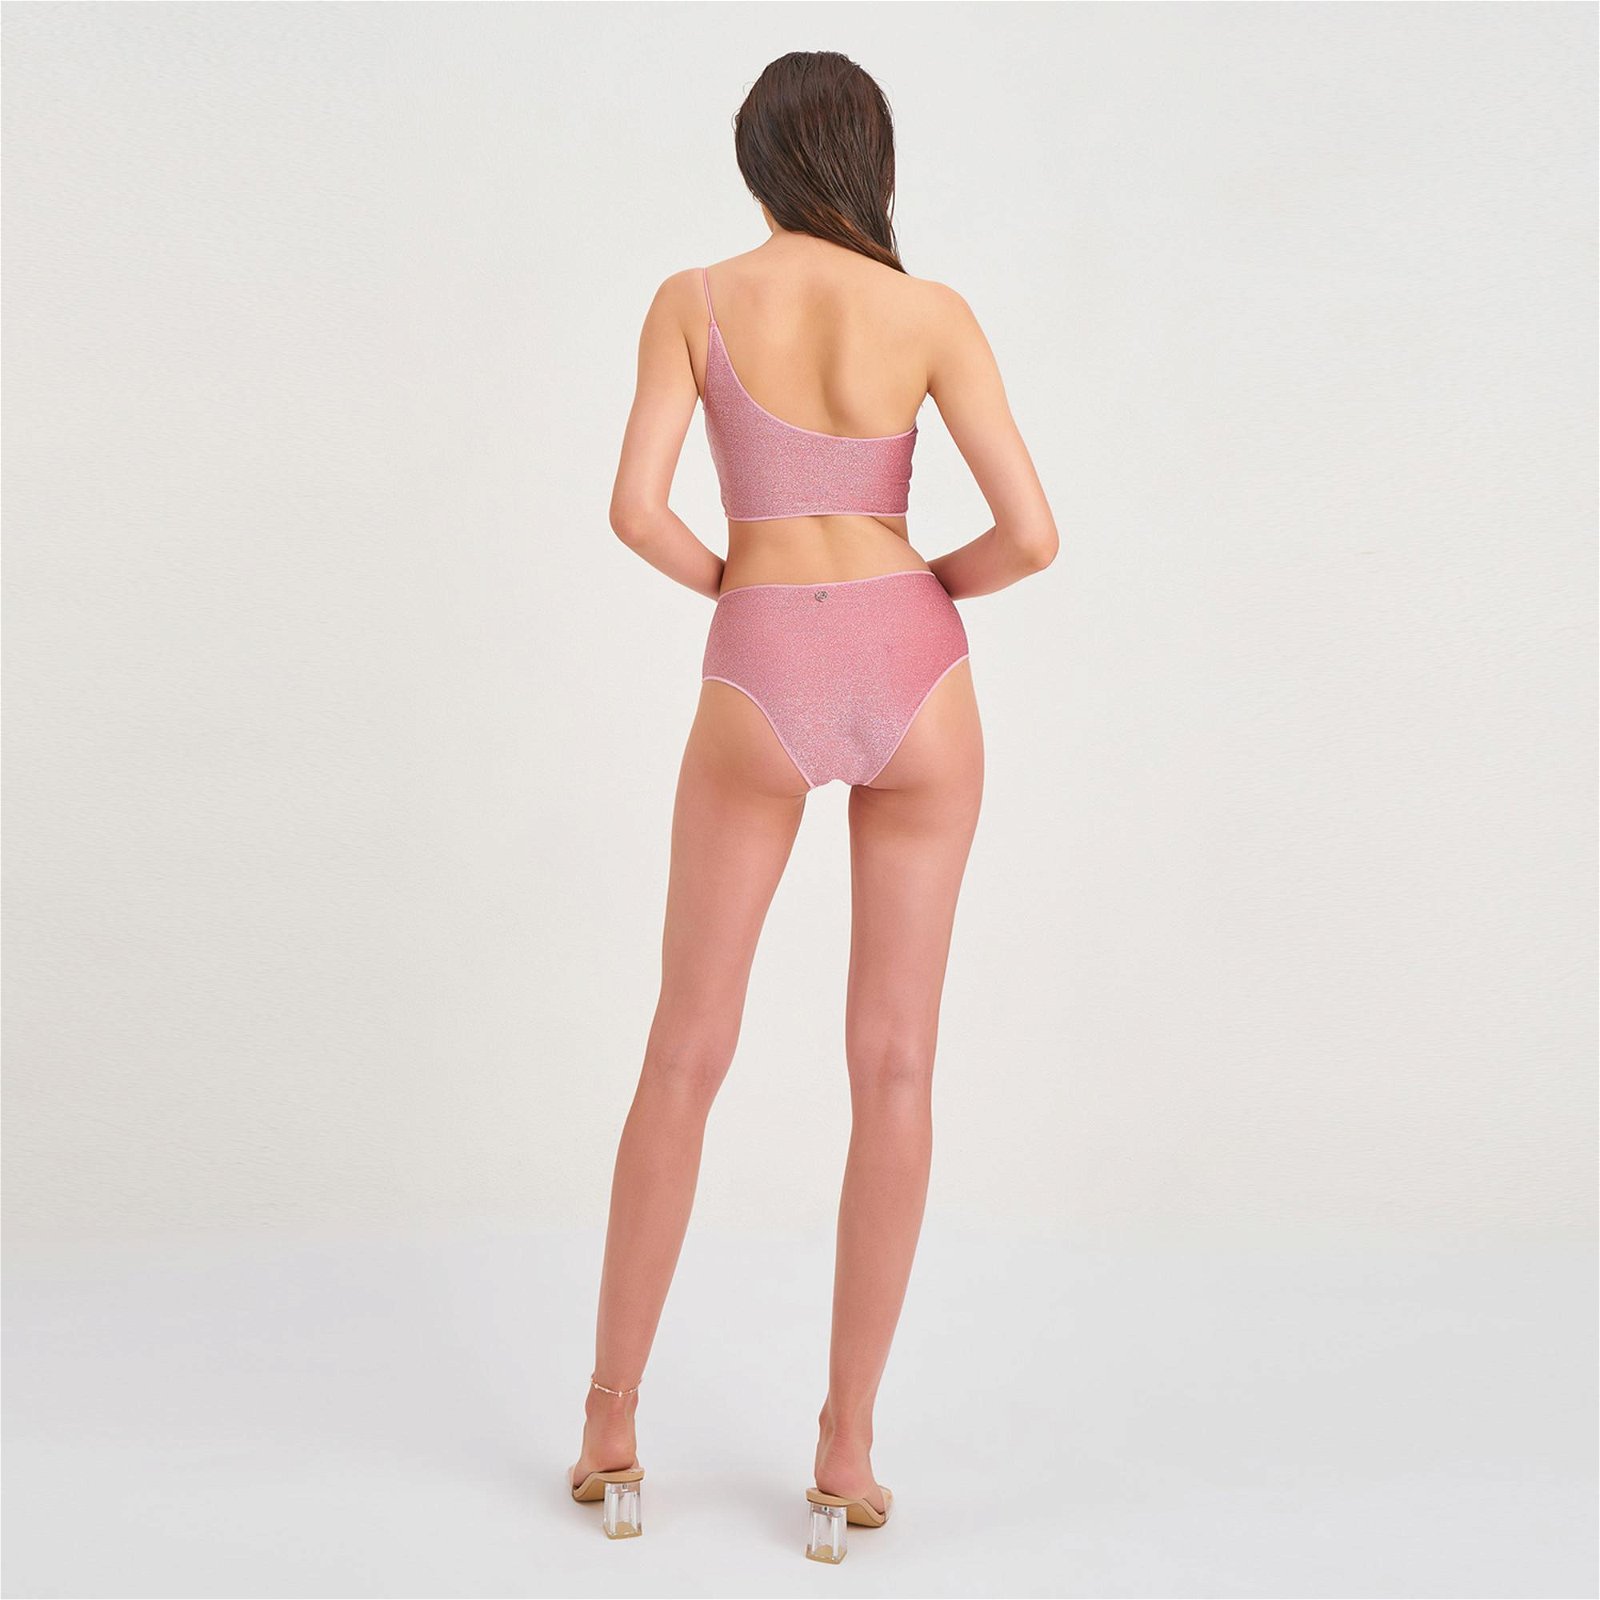 Sandshaped Peri Simli Kadın Pembe Bikini Altı